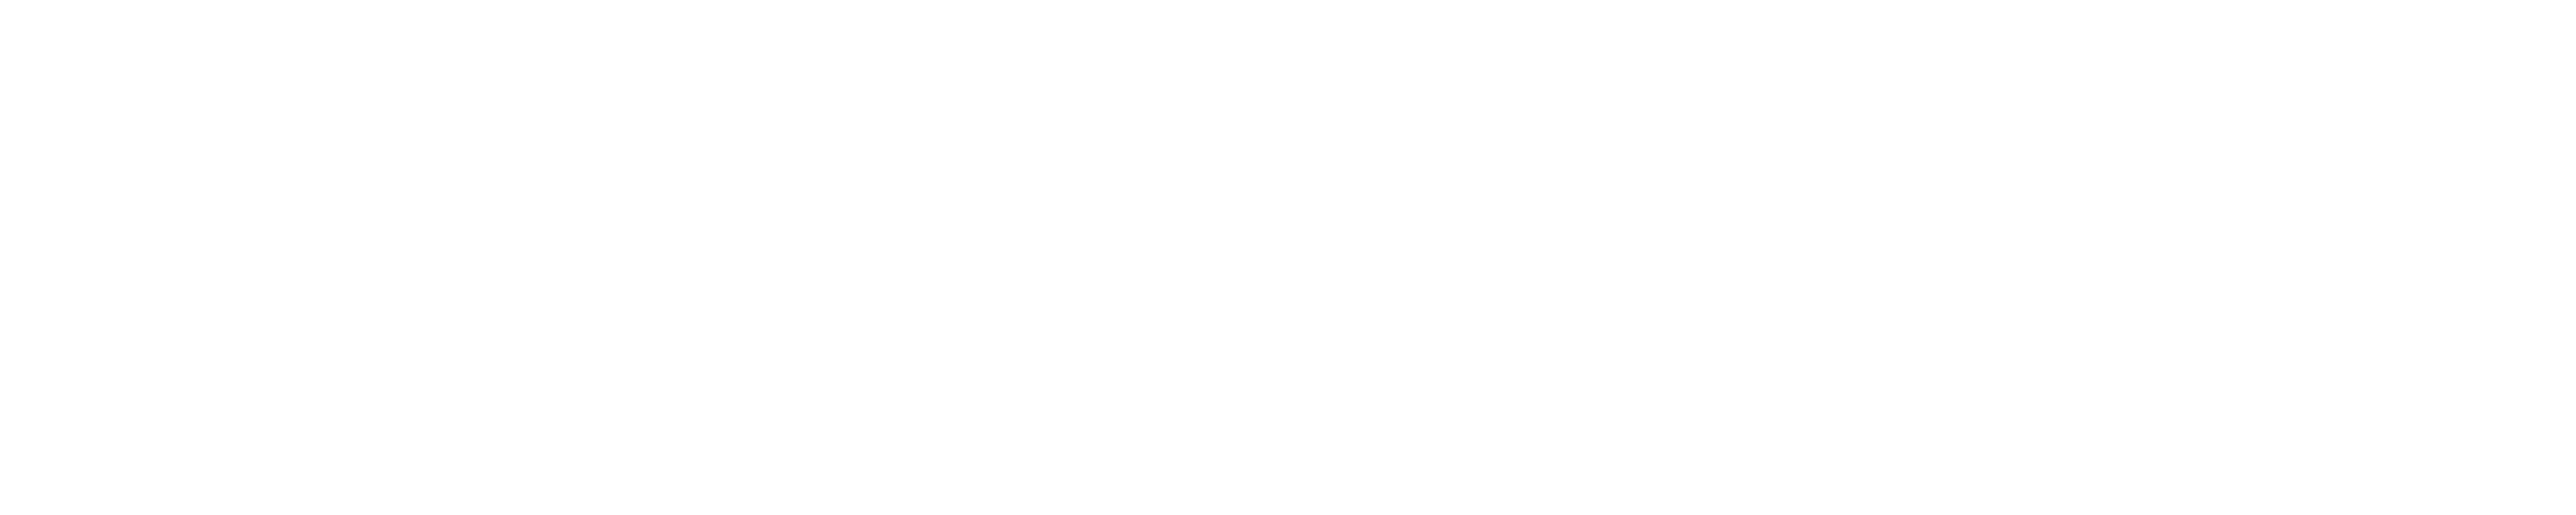 לוגו של החנות - Lumiére Jewelry - תכשיטי איכות לגבר